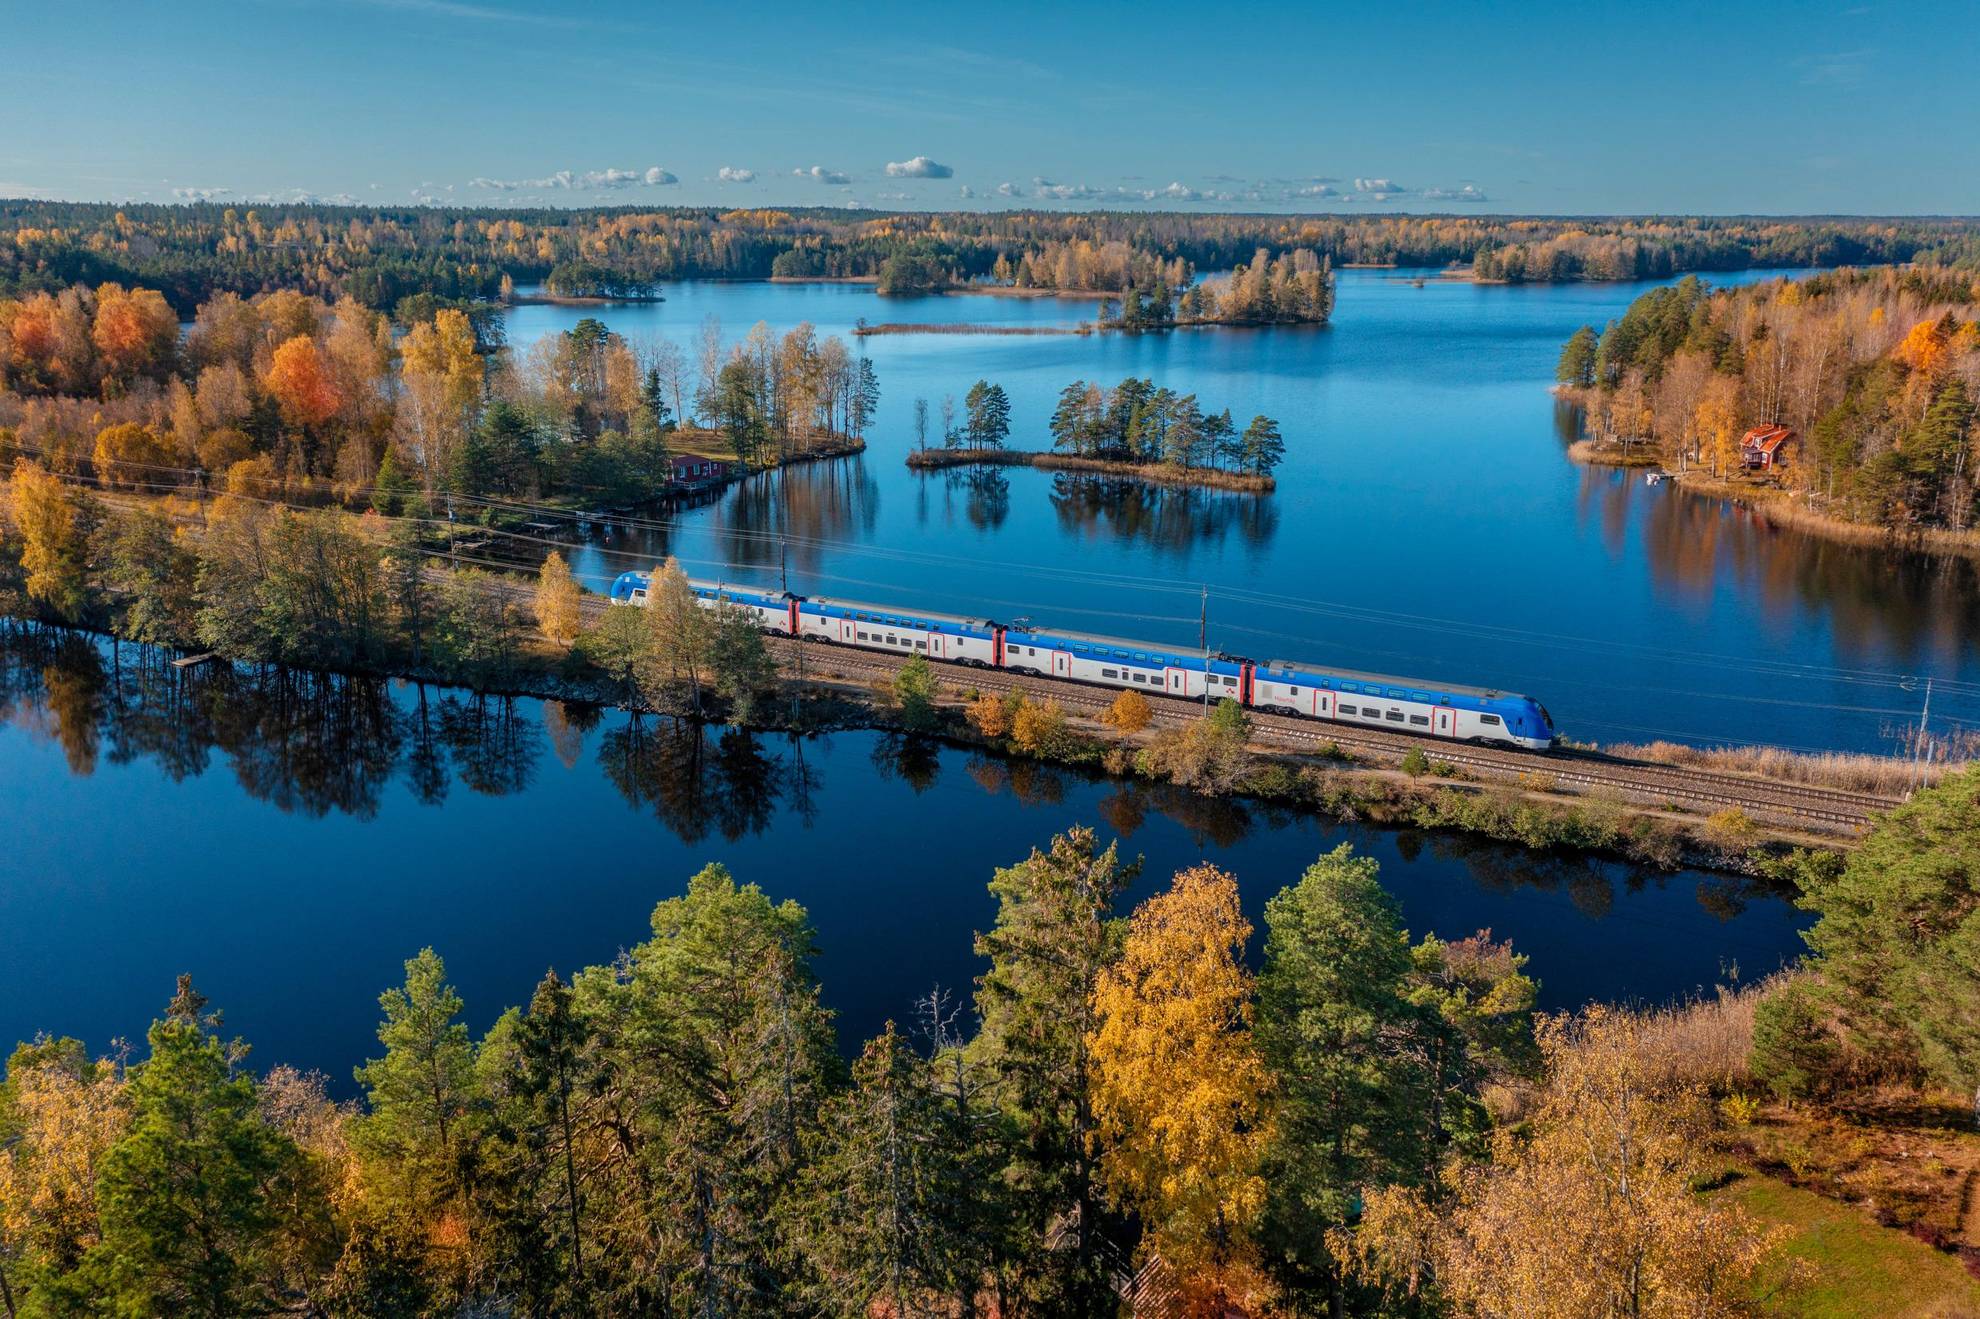 Vue aérienne d'un train traversant un paysage automnal composé de forêts et lacs.